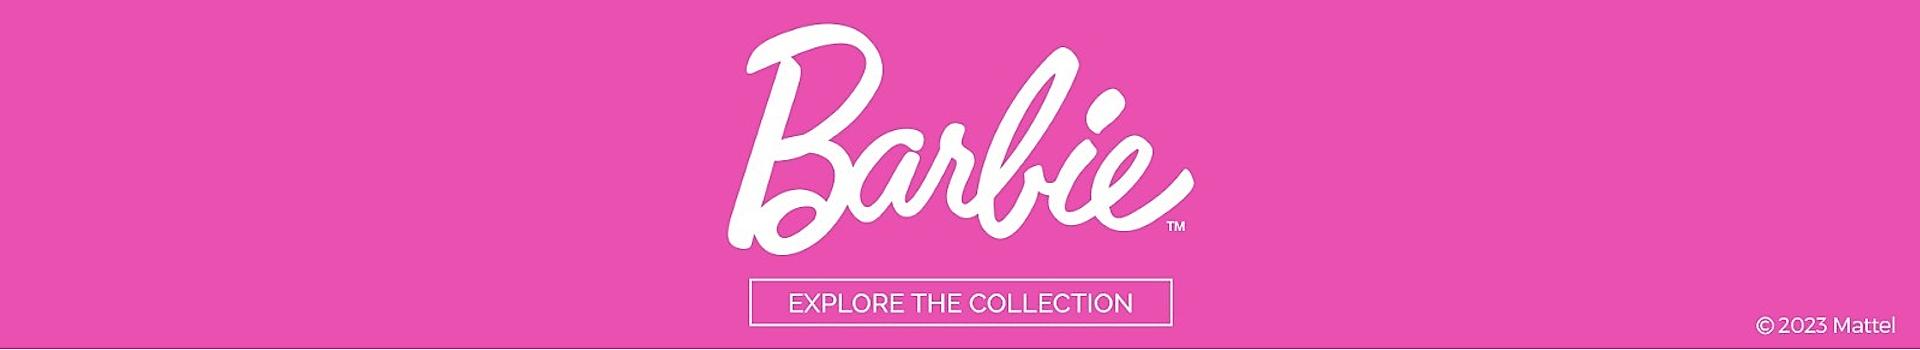 Shop Now The Official Barbie Merchandise